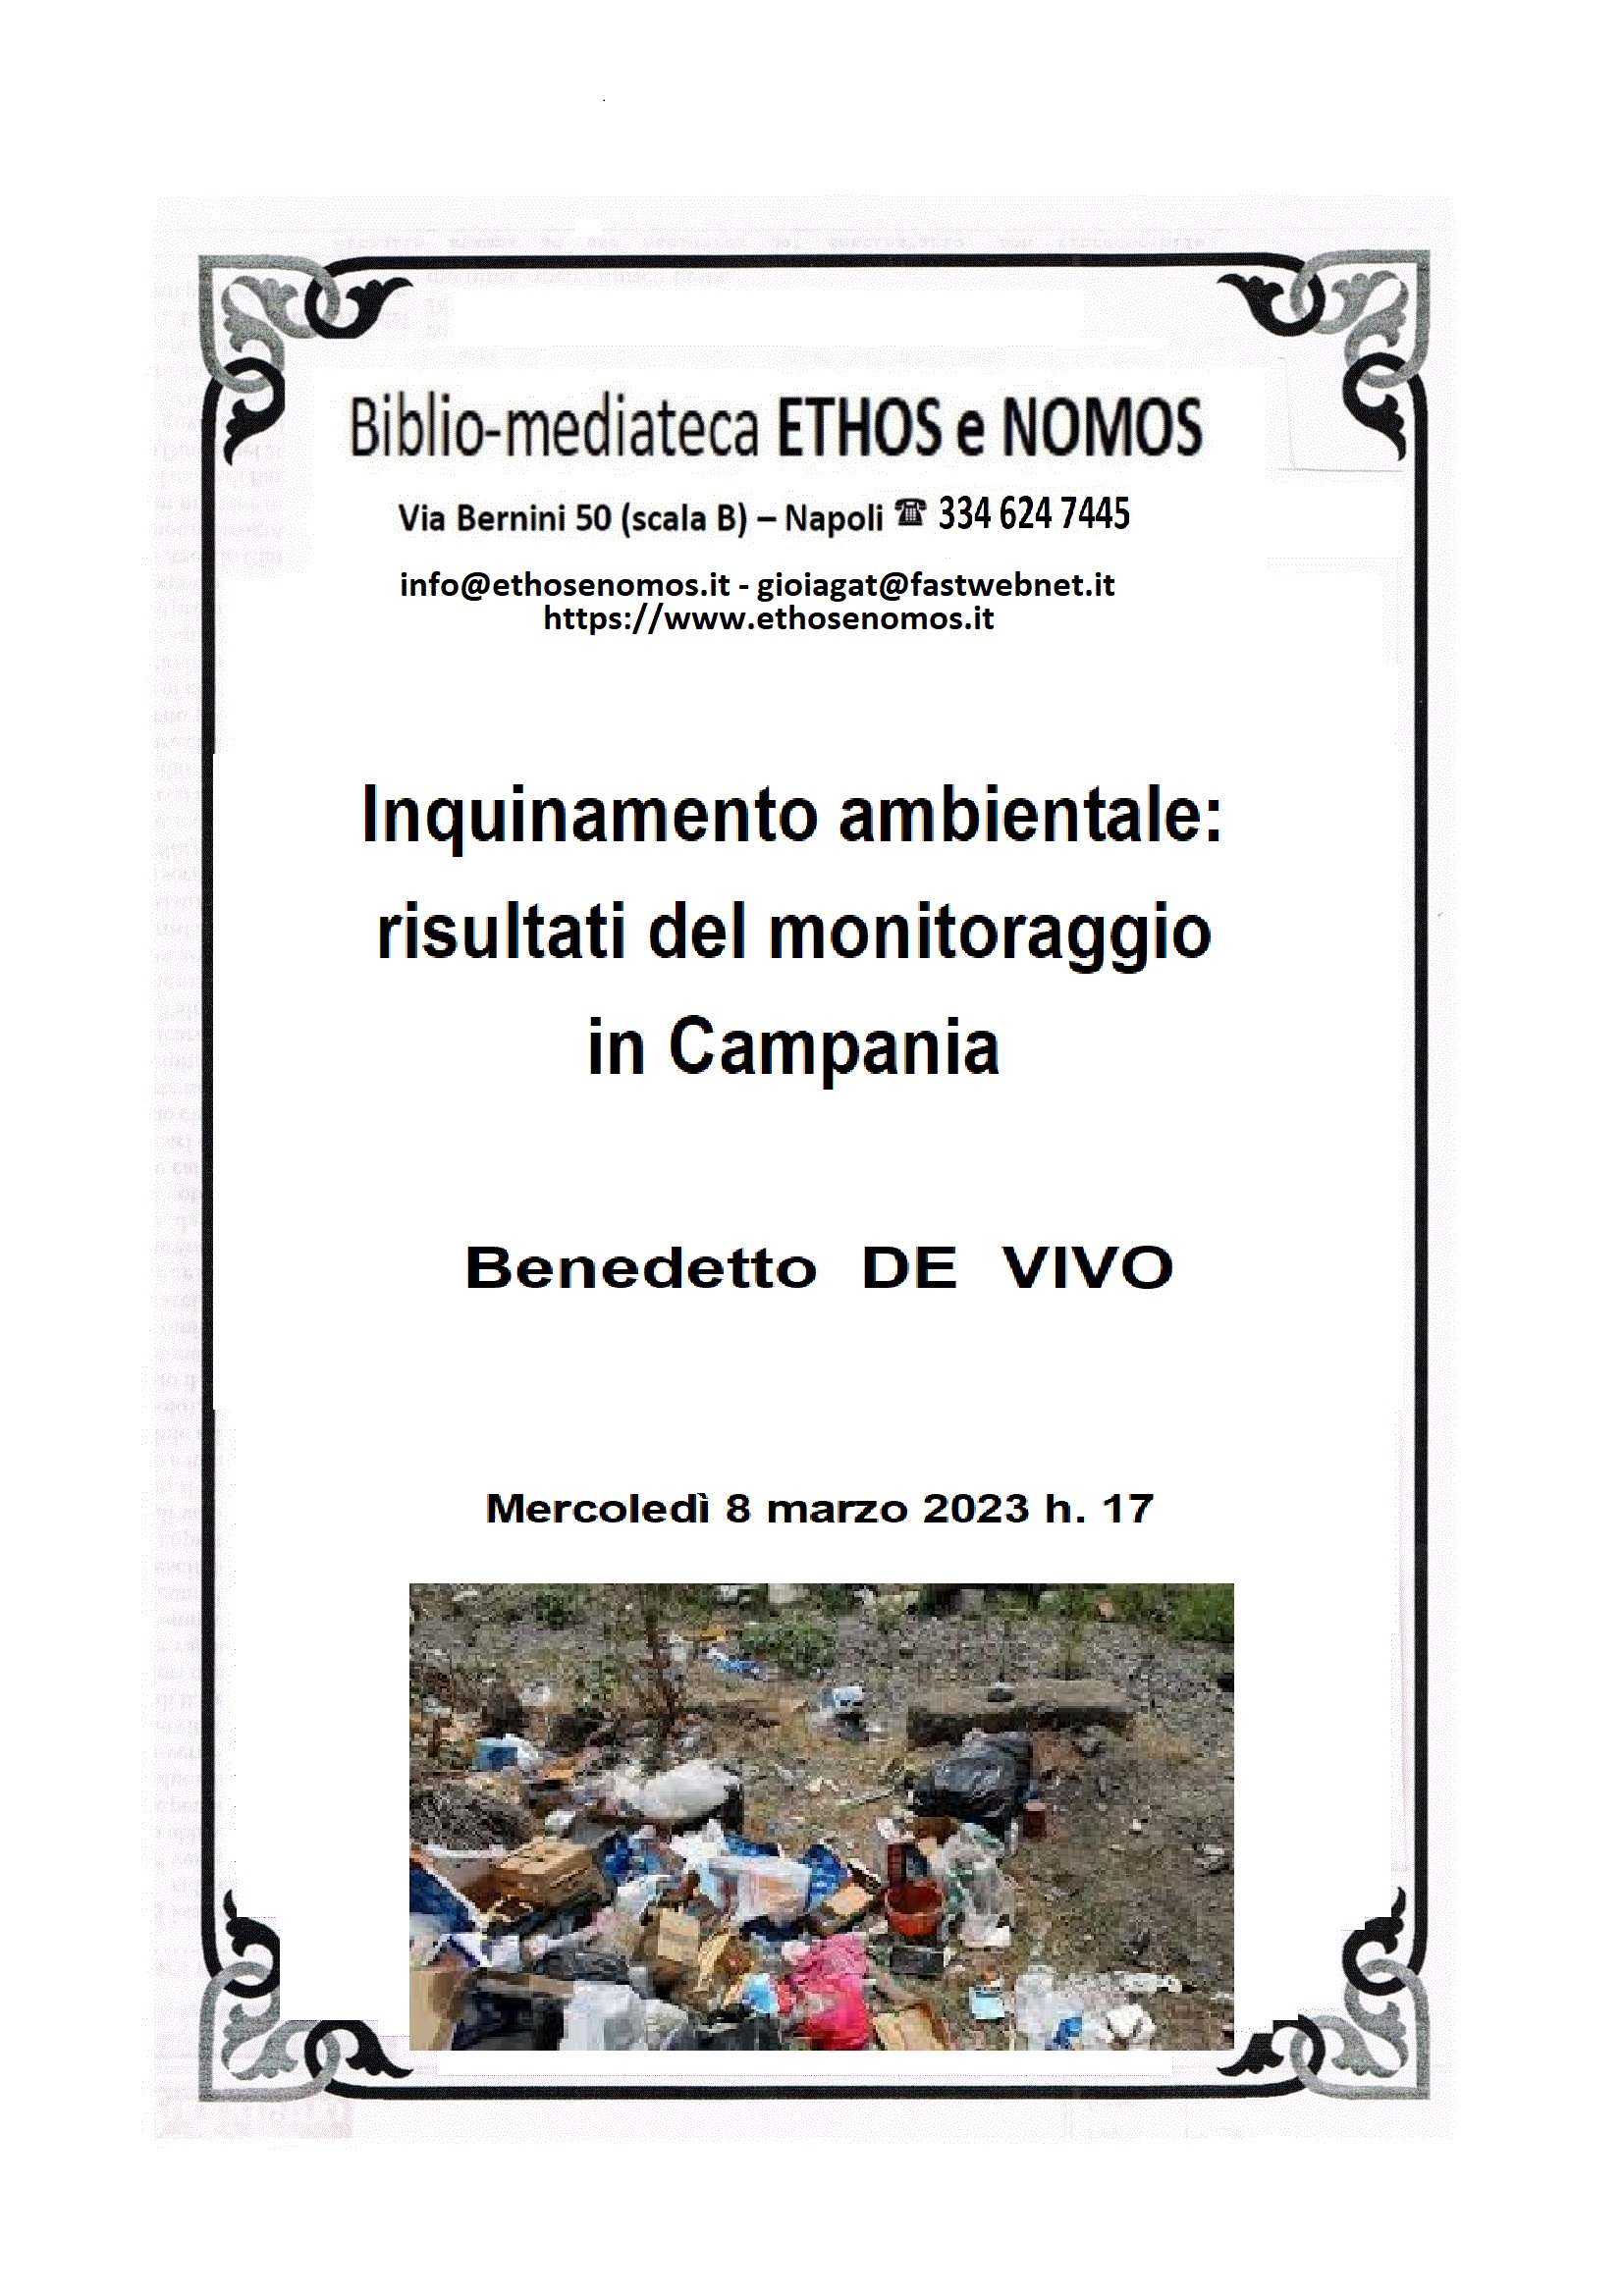 Benedetto DE VIVO  -  Inquinamento ambientale: risultati monitoraggio in Campania